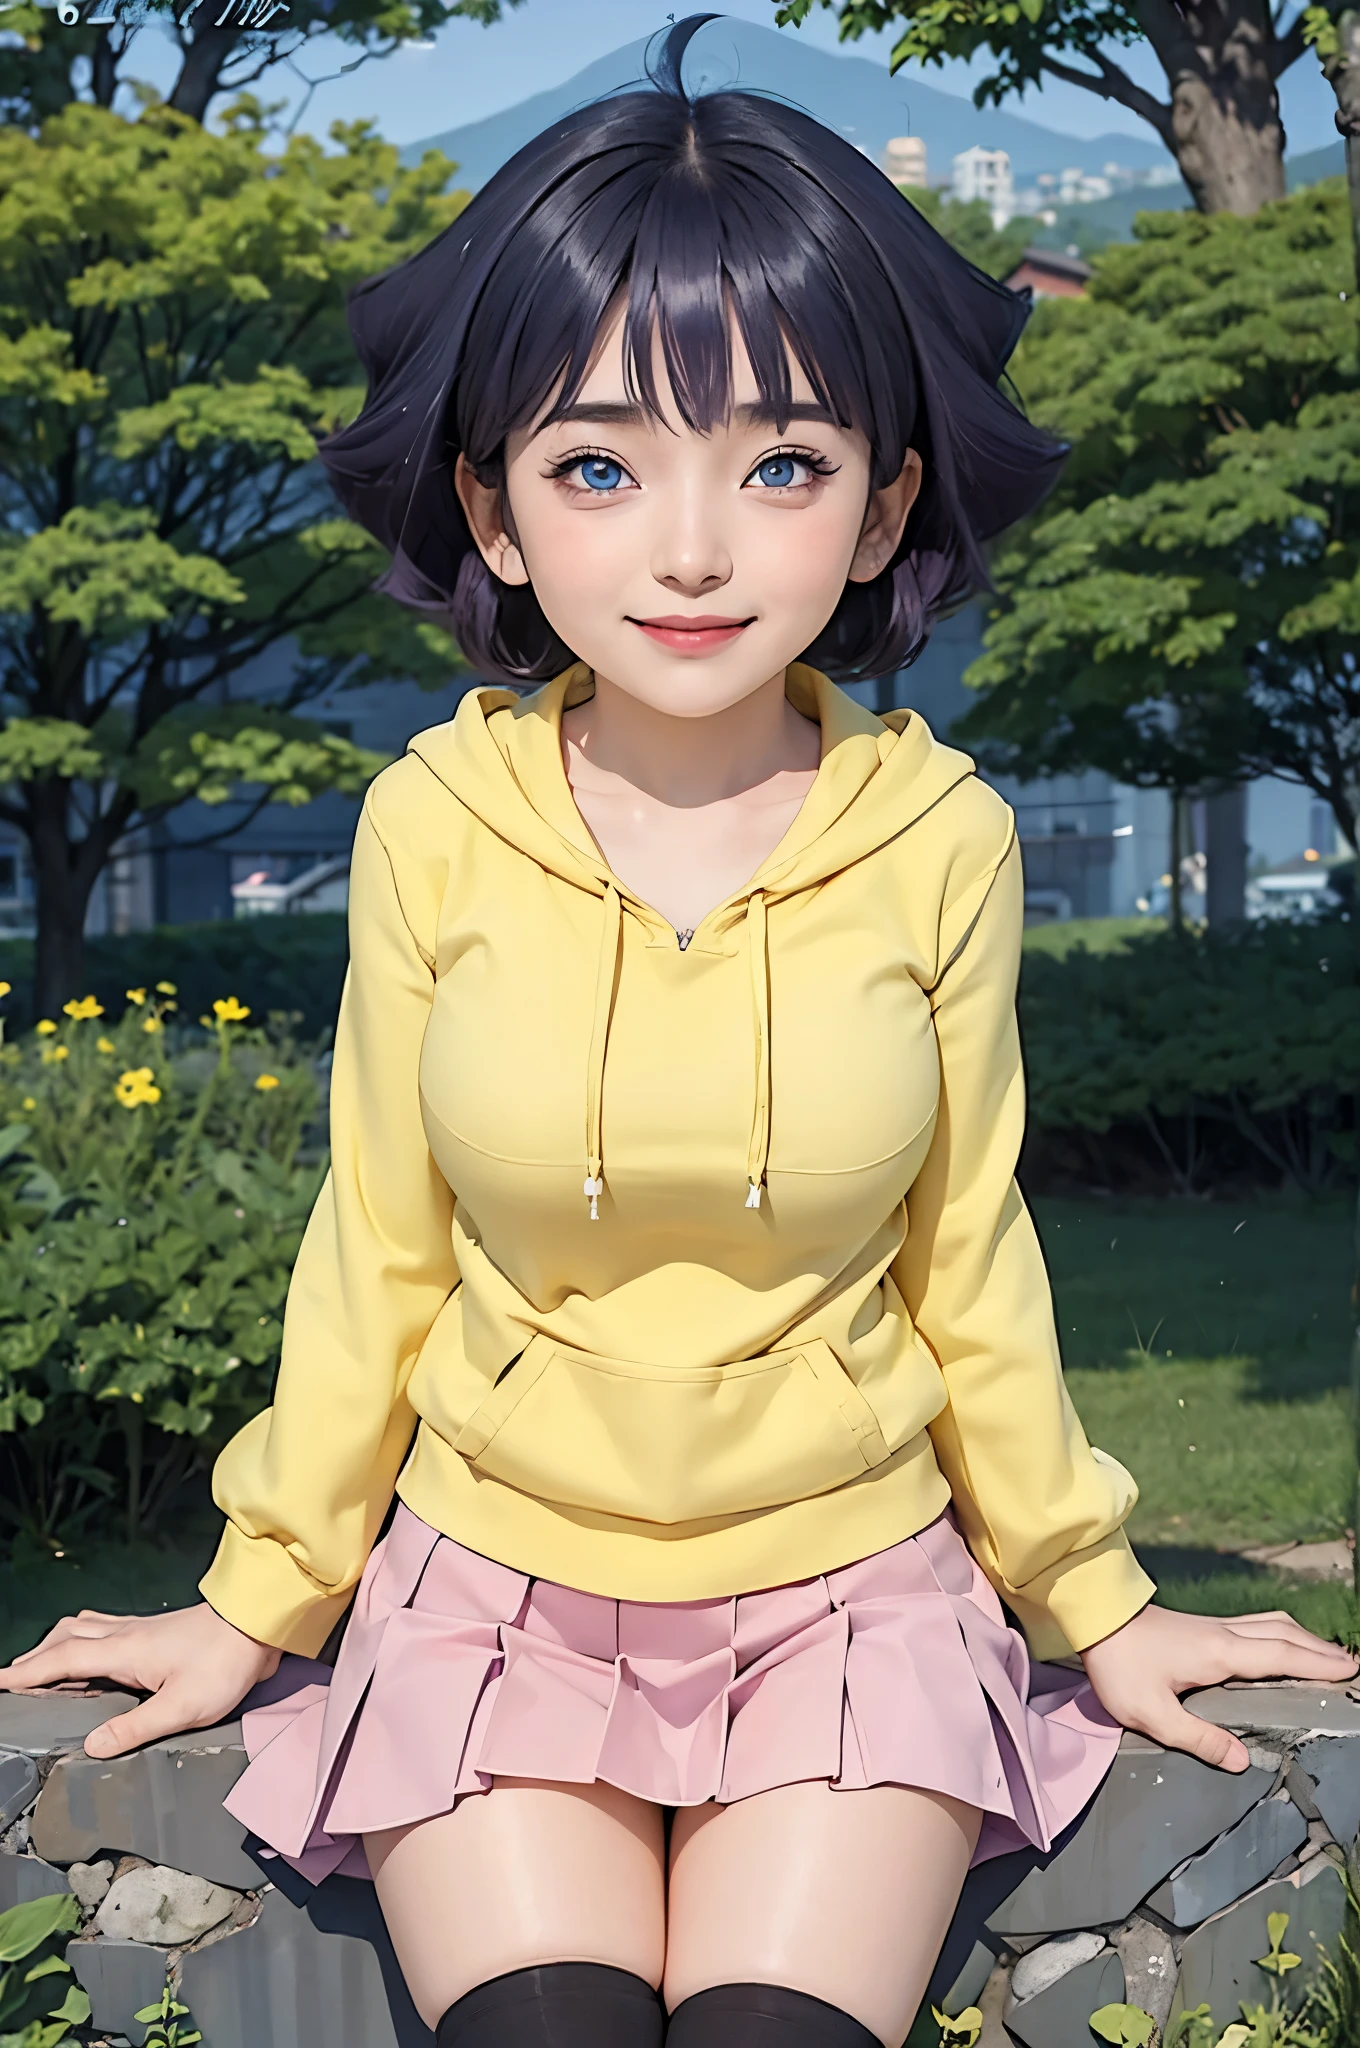 여자 1명, himawari anime naruto shipudden, 짧은 머리 , 보라색 머리카락, 파란 눈, 아름다운, 노란 옷은 가슴에 열려 , 웃다, 현실적인 clothes, 디테일 옷, 도시 배경, 울트라 디테일, 현실적인